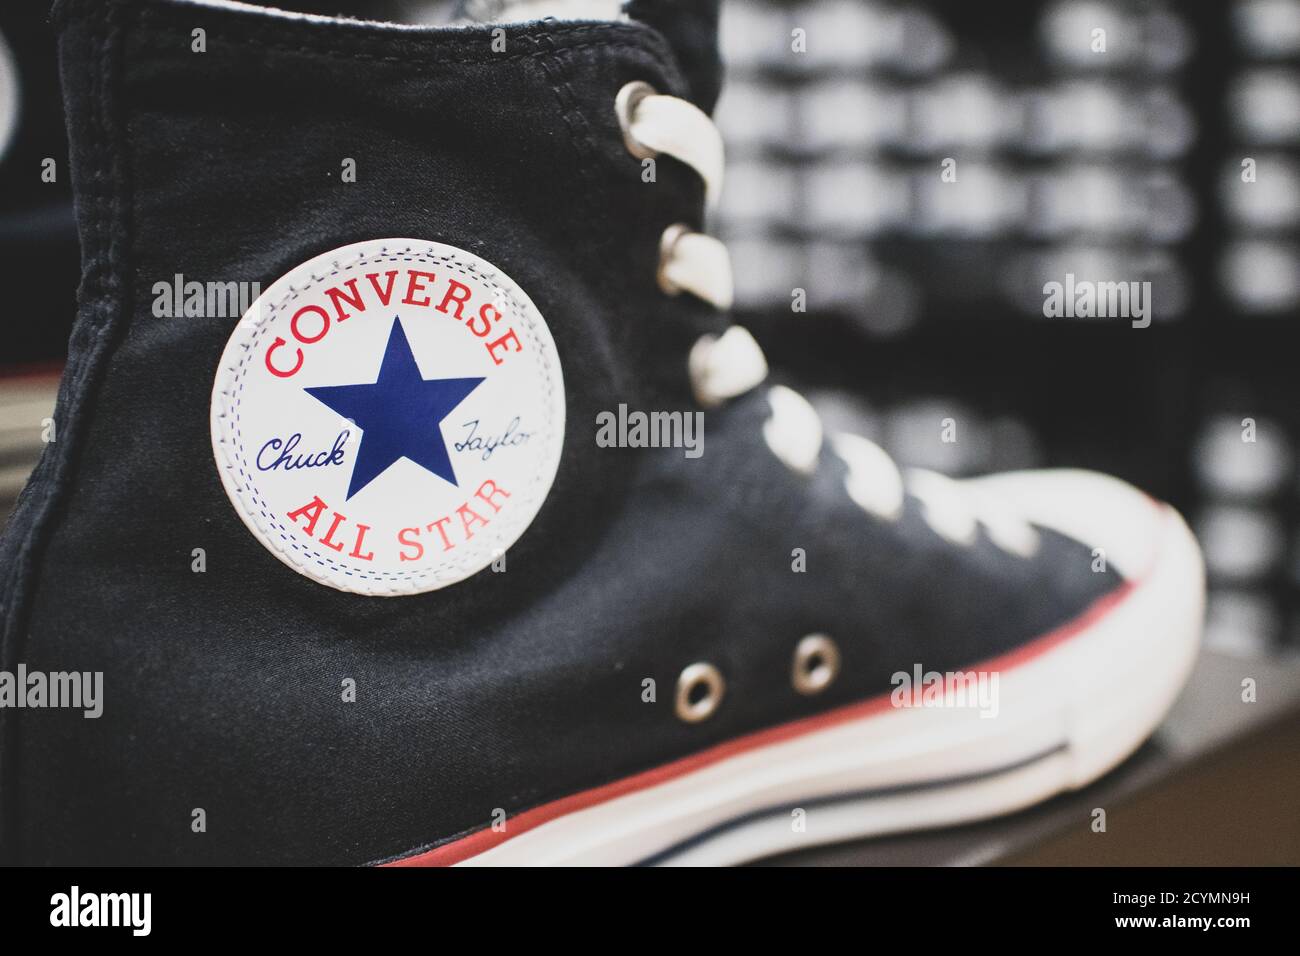 Chaussures Converse exposées. Il s'agit d'une société américaine de chaussures qui conçoit et produit des baskets fraîches et salopantes, populaires dans la culture de la jeunesse Banque D'Images